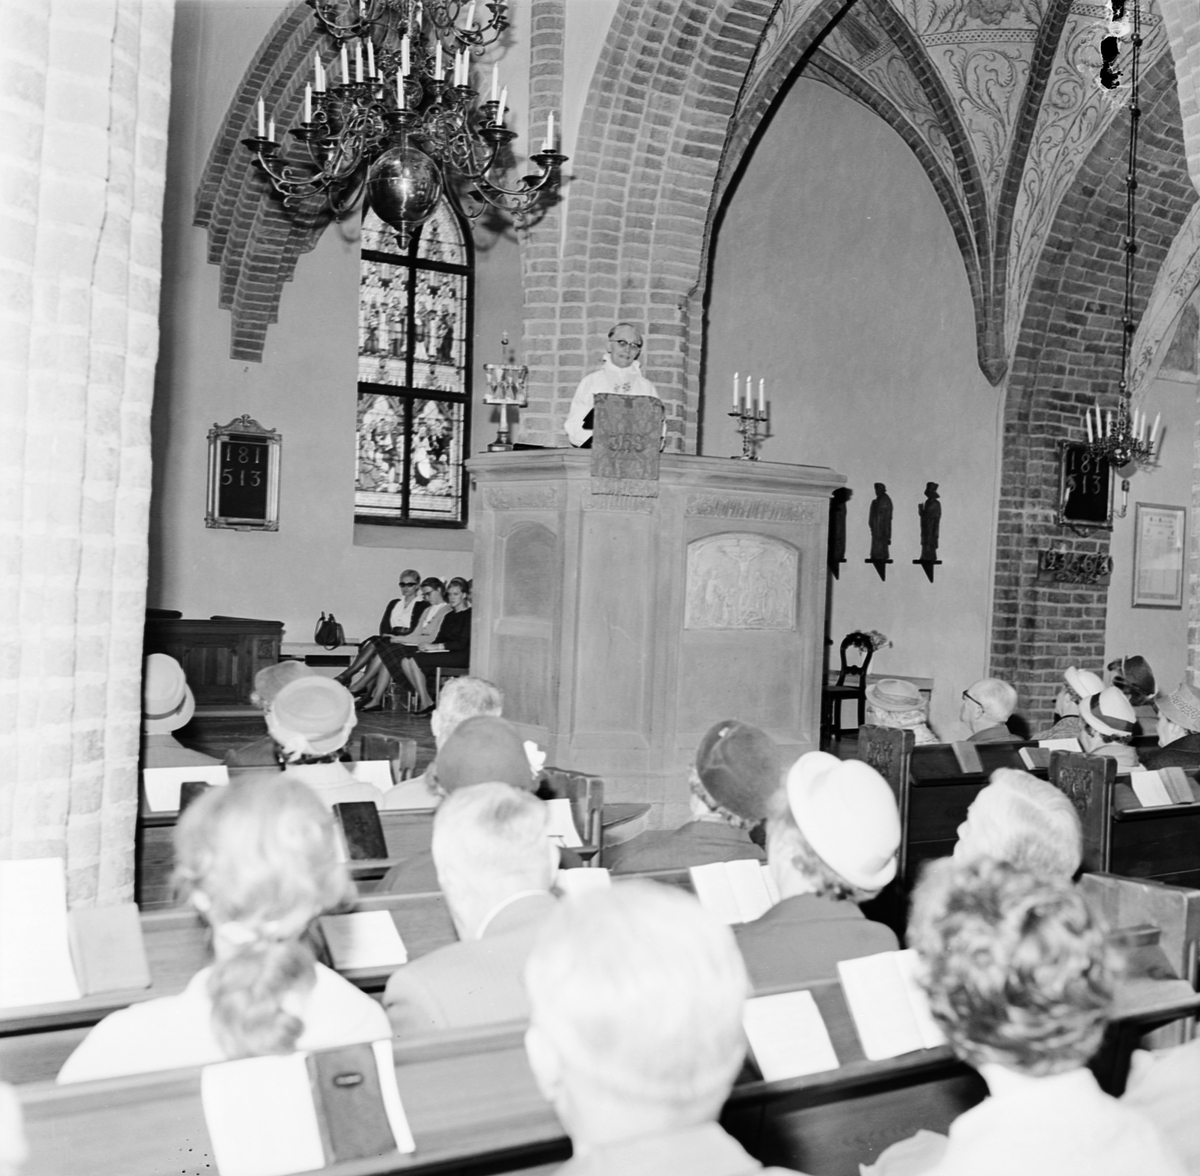 Helga trefaldighets kyrka, Uppsala 1961